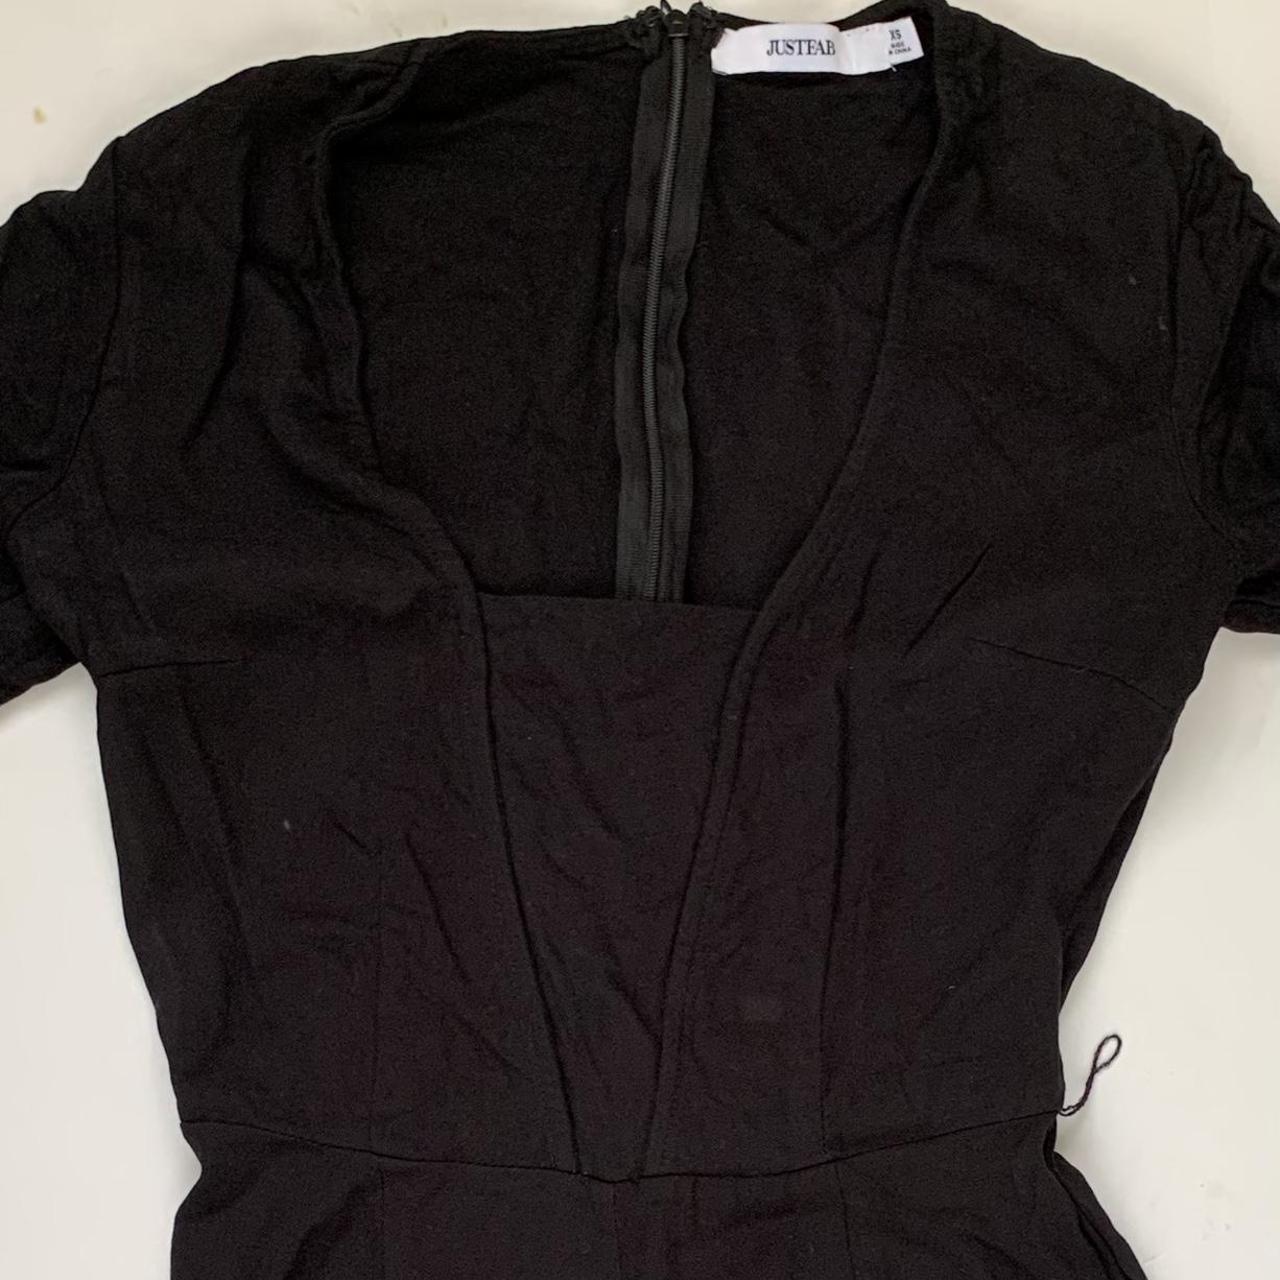 Vintage Black Long Jumpsuit Beautiful long sleeved... - Depop